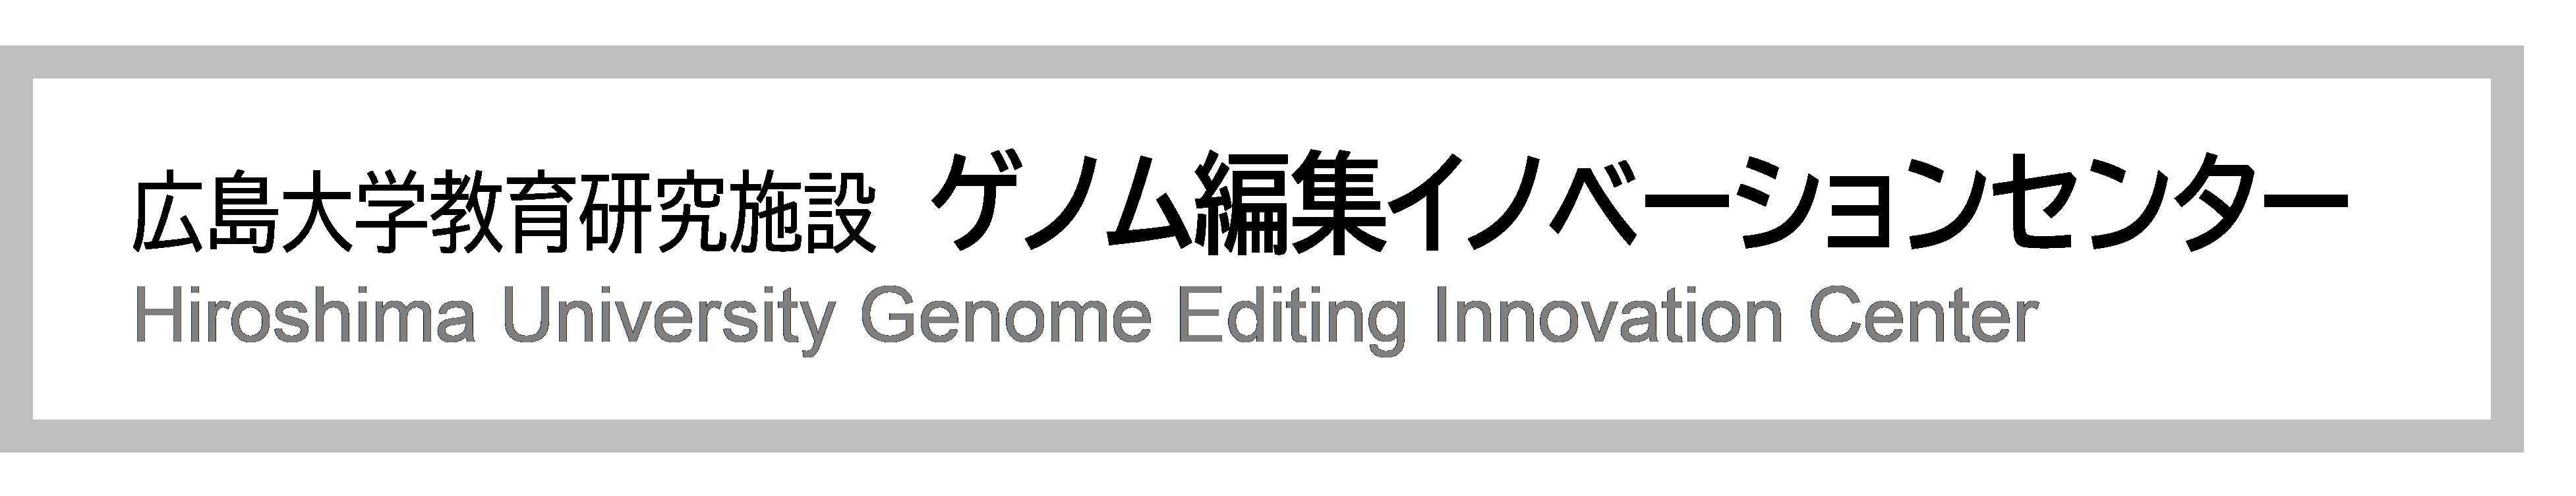 広島大学教育研究施設 ゲノム編集イノベーションセンター Hiroshima University Genome Editting Innovation Center